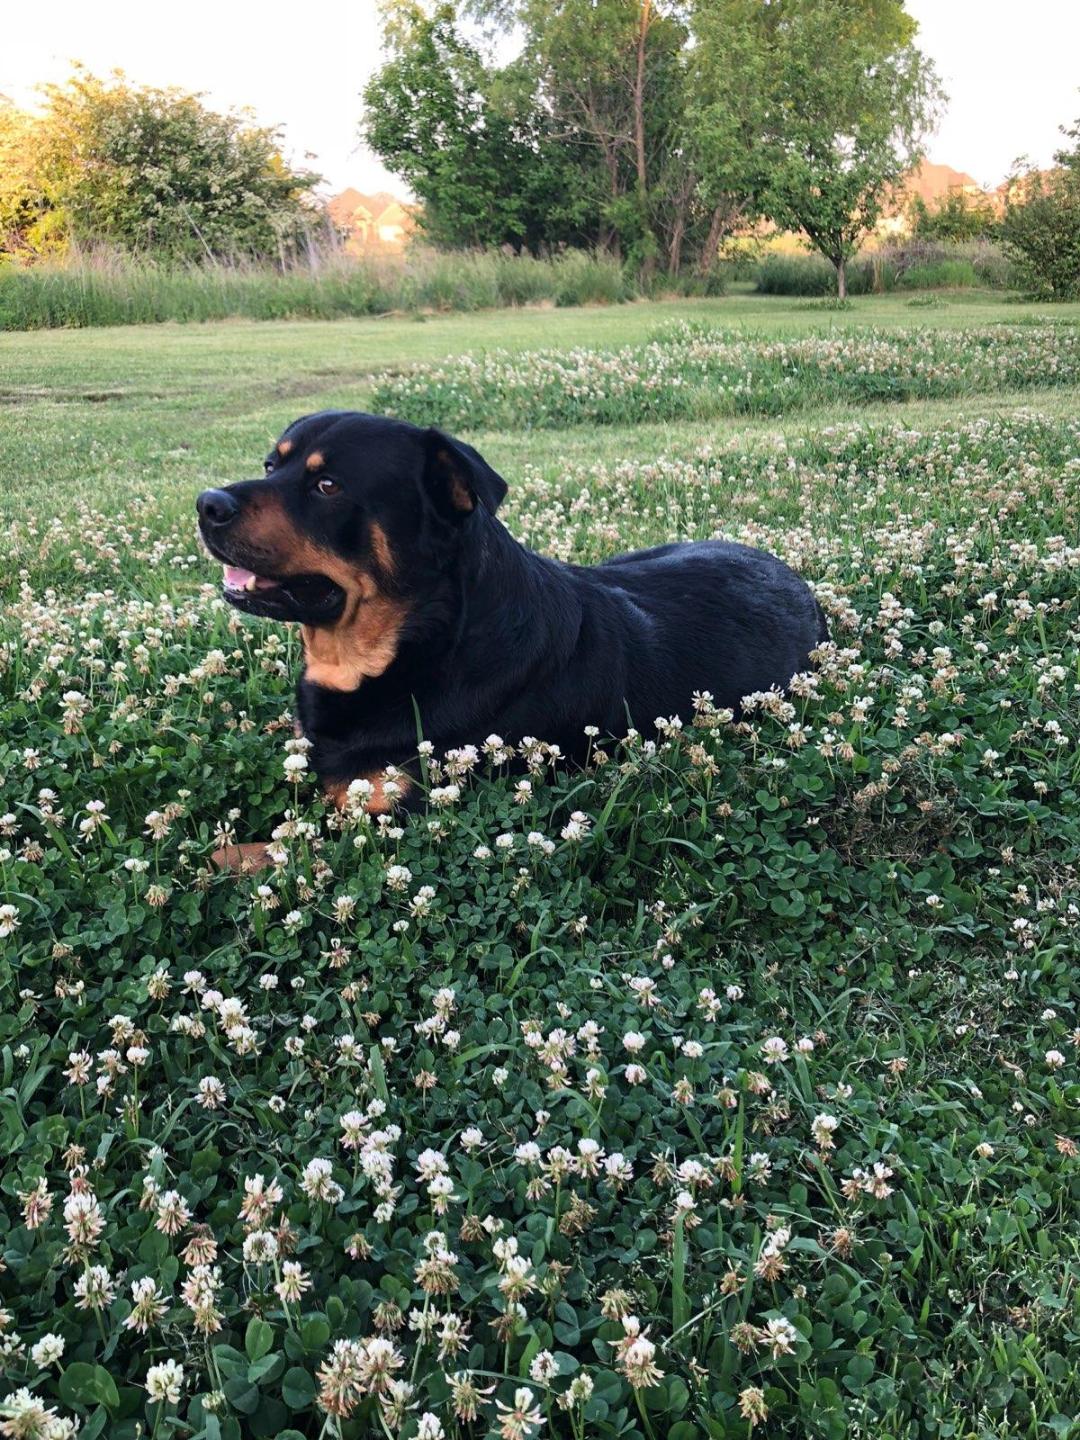 Rottweiller in the grass